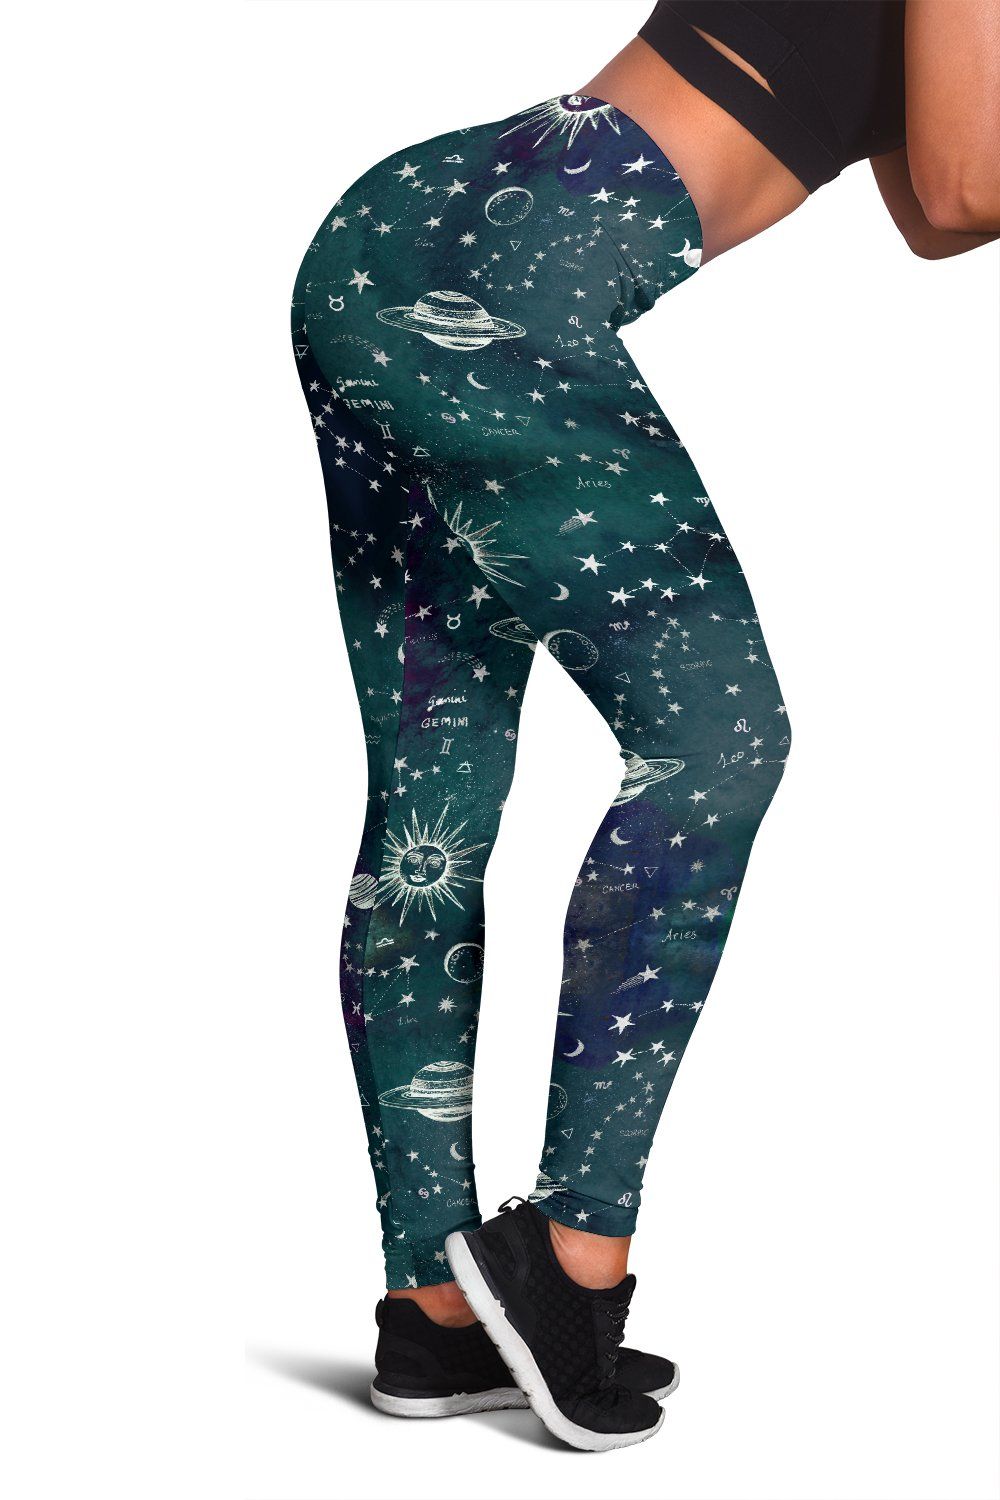 Astrology map turquoise leggings - Spirit Nest